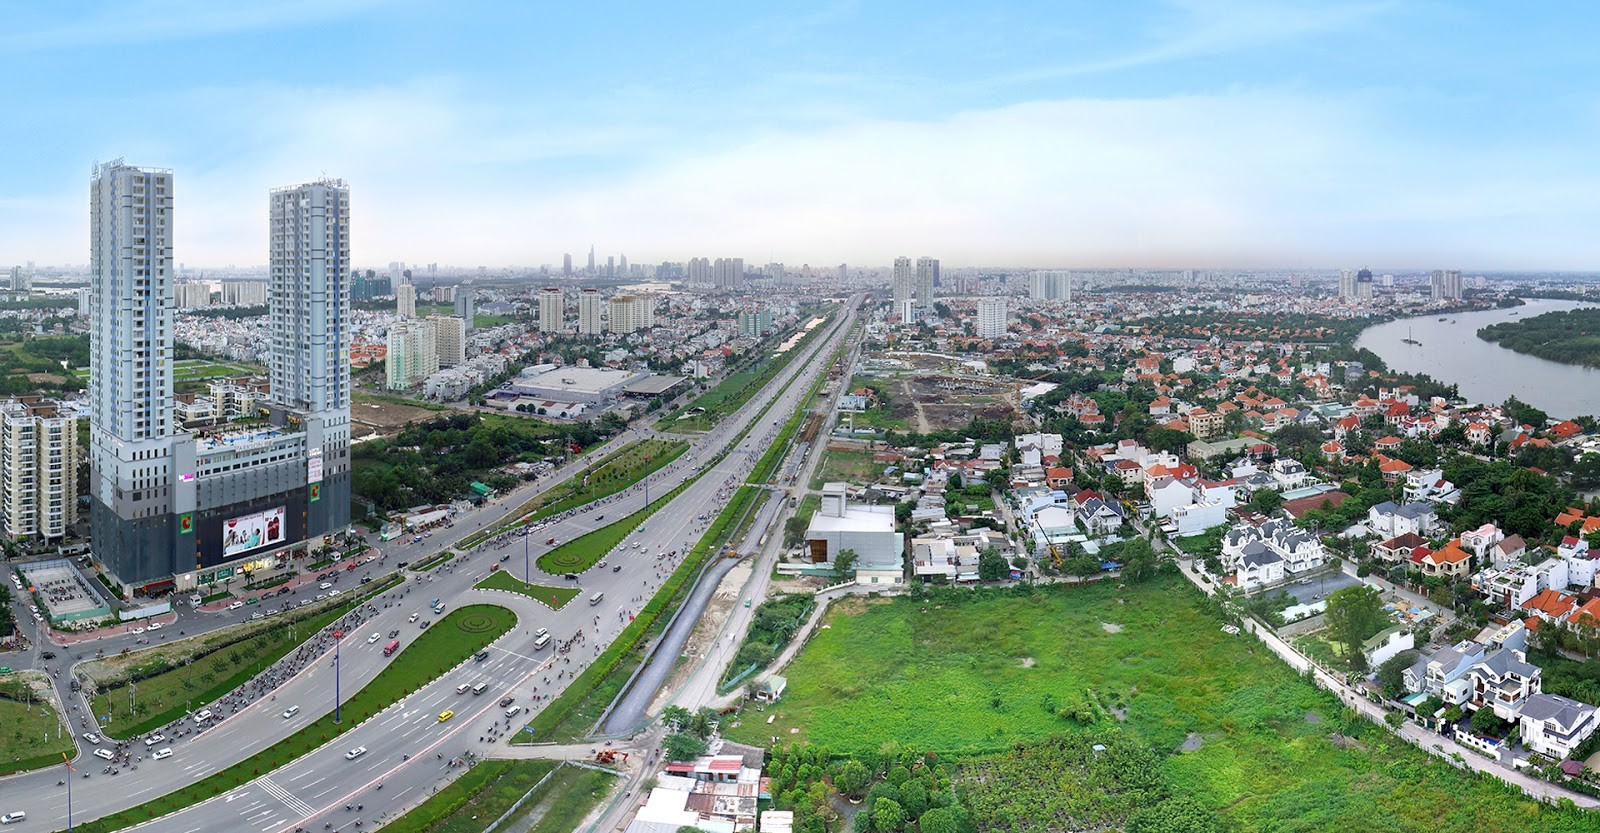 
Mục tiêu phát triển nhà ở của TP Hồ Chí Minh trong năm 2022 là tăng tối thiểu 6,7 triệu m2 sàn nhà ở.
